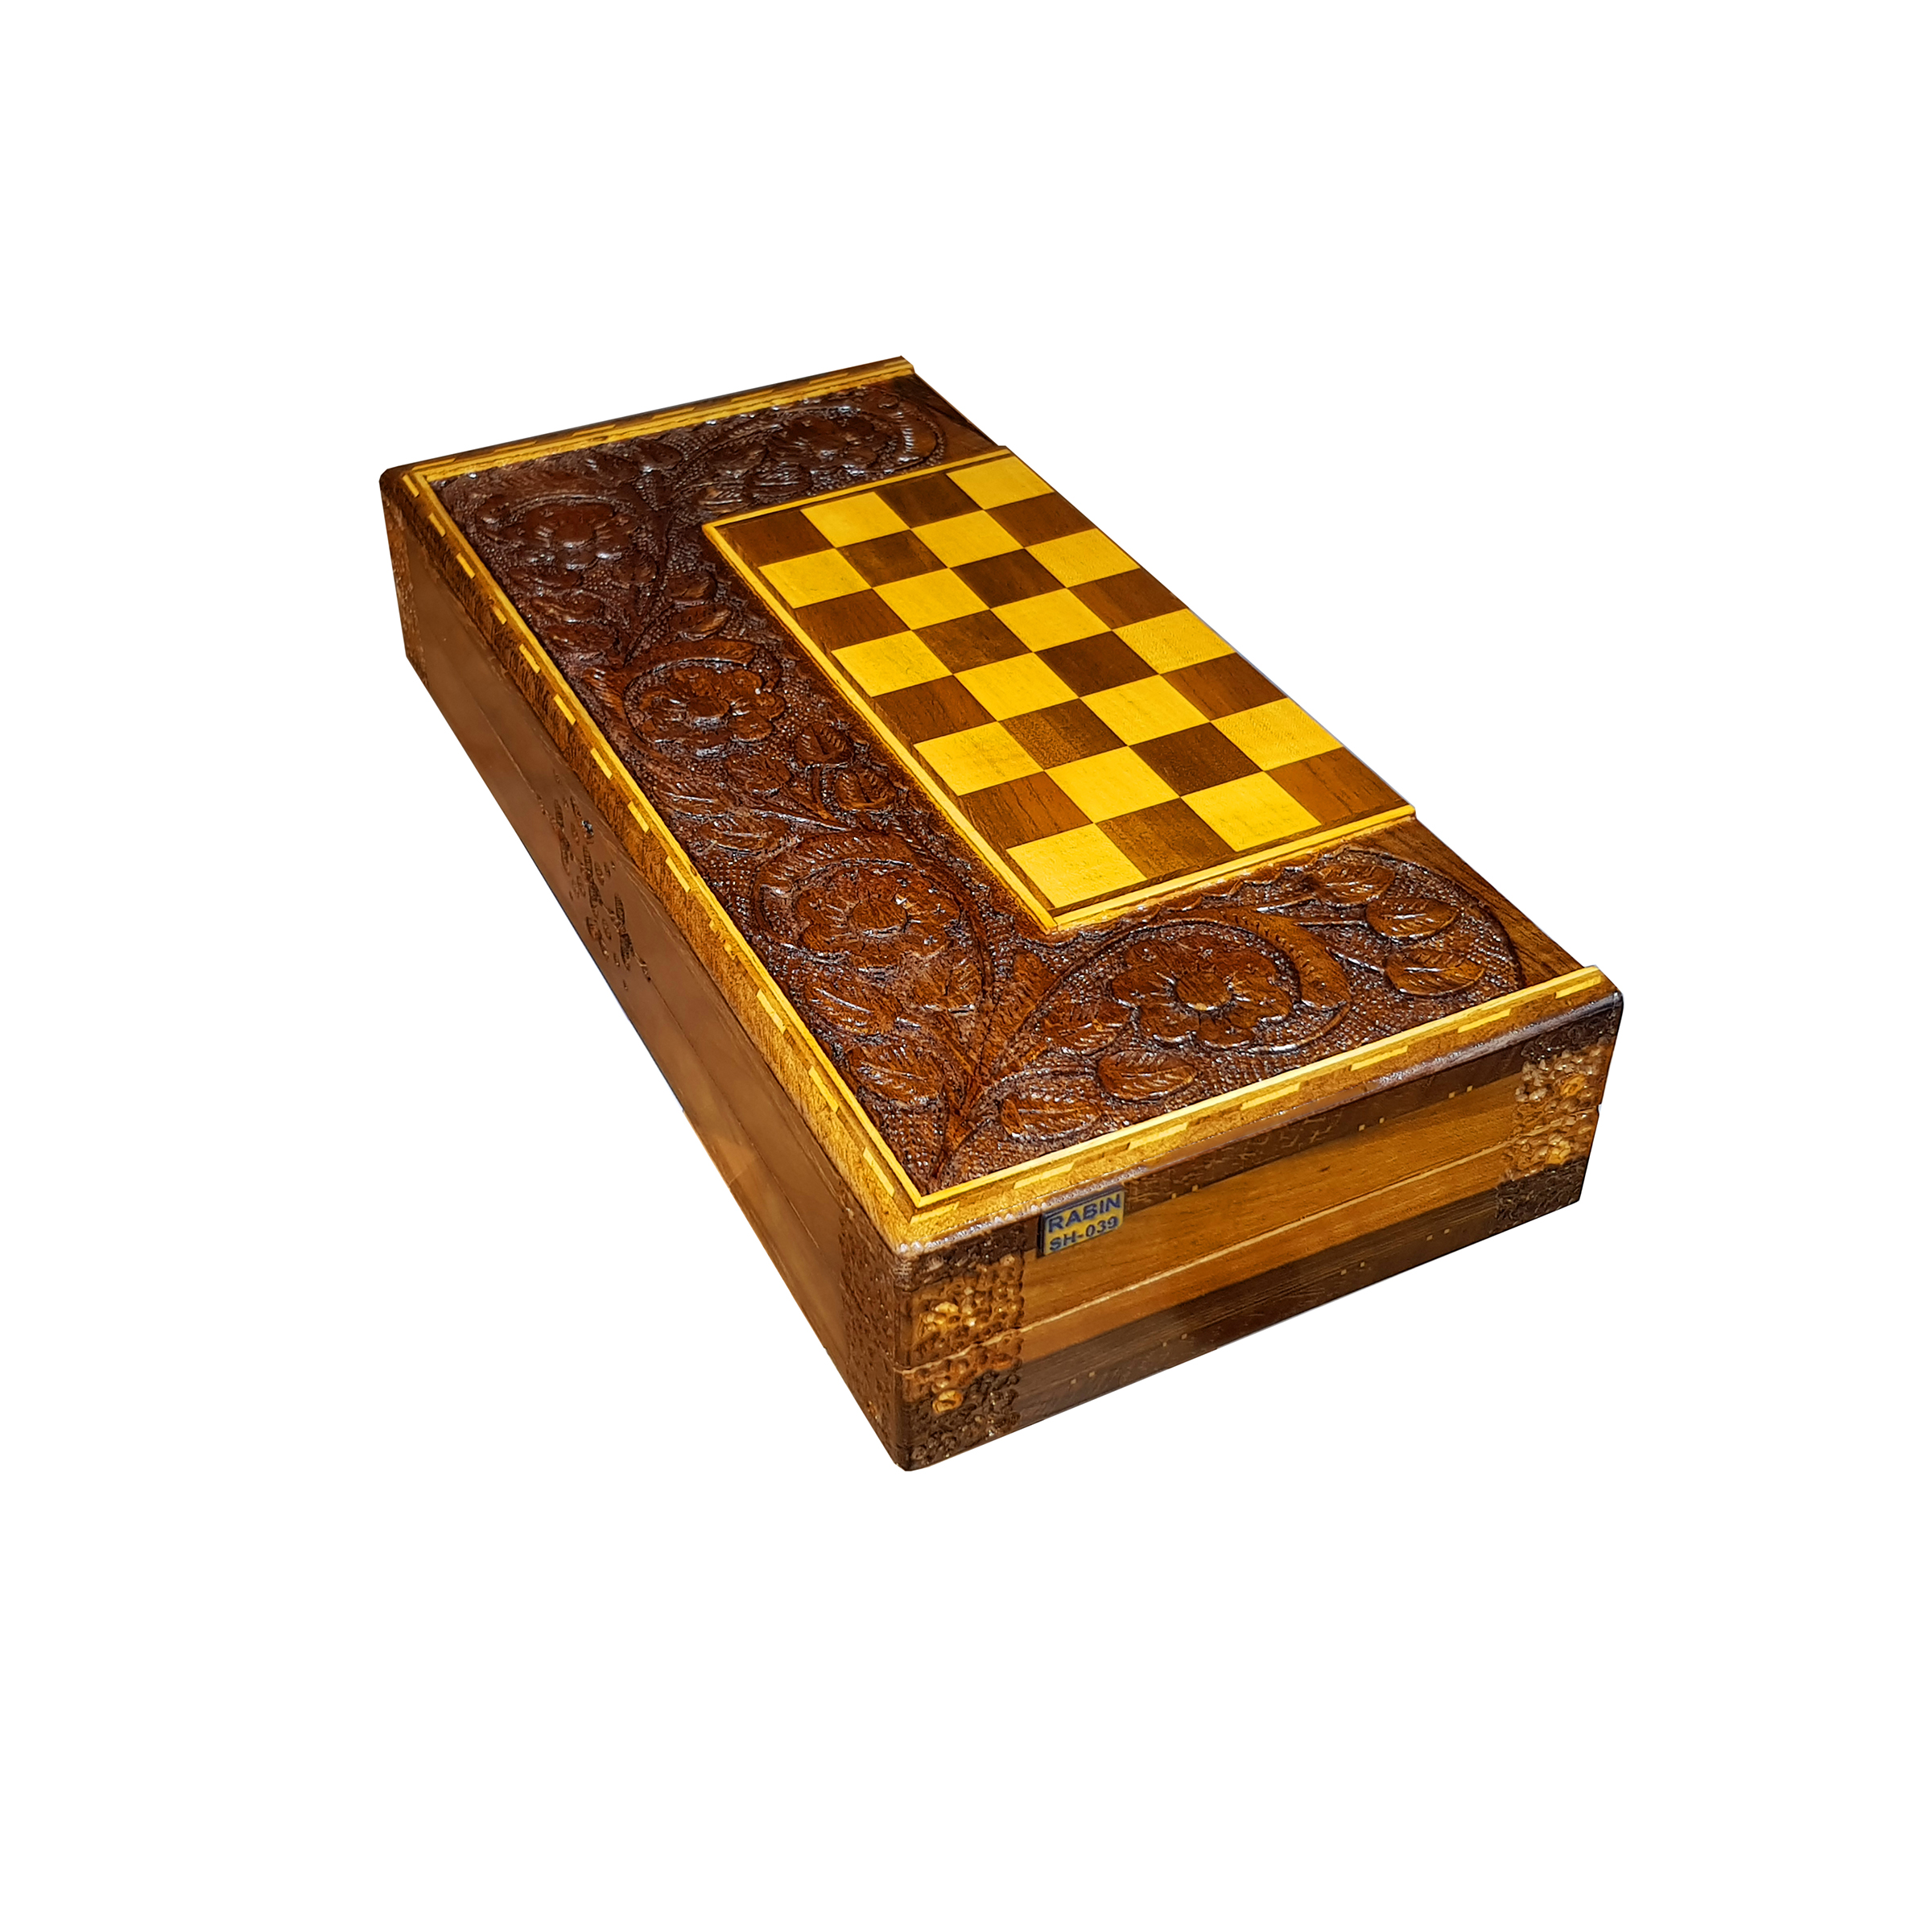  صفحه شطرنج منبت گل درشت رابین SH_39